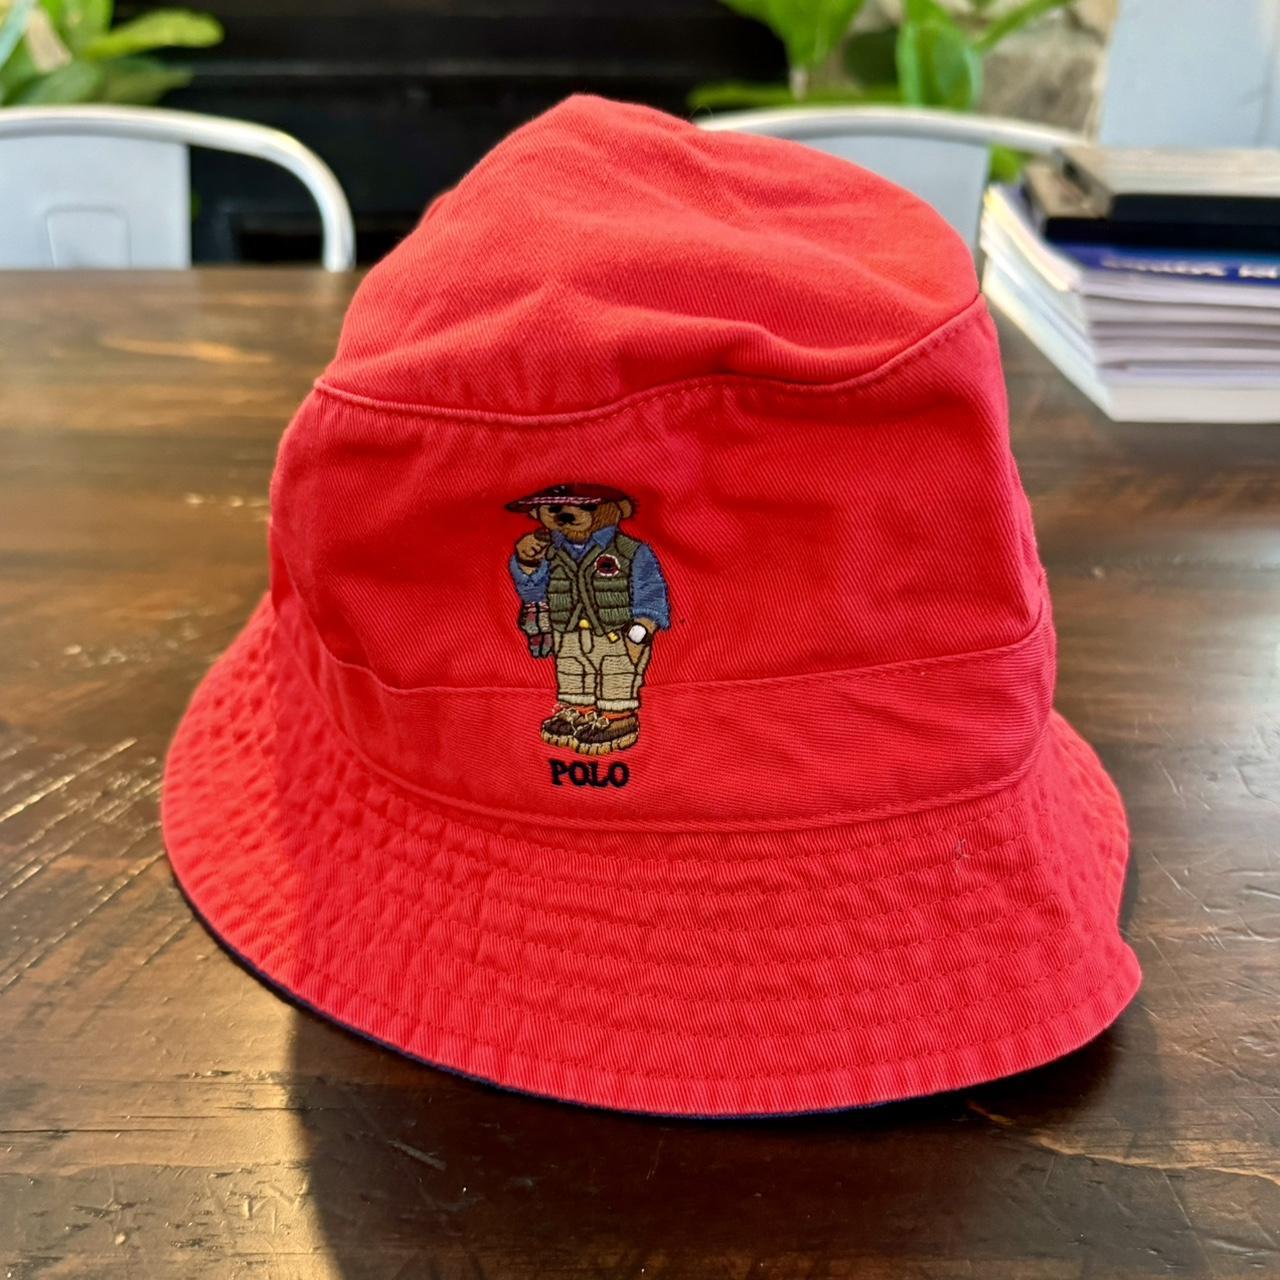 Polo Ralph Lauren Men's Bucket Hats - Red